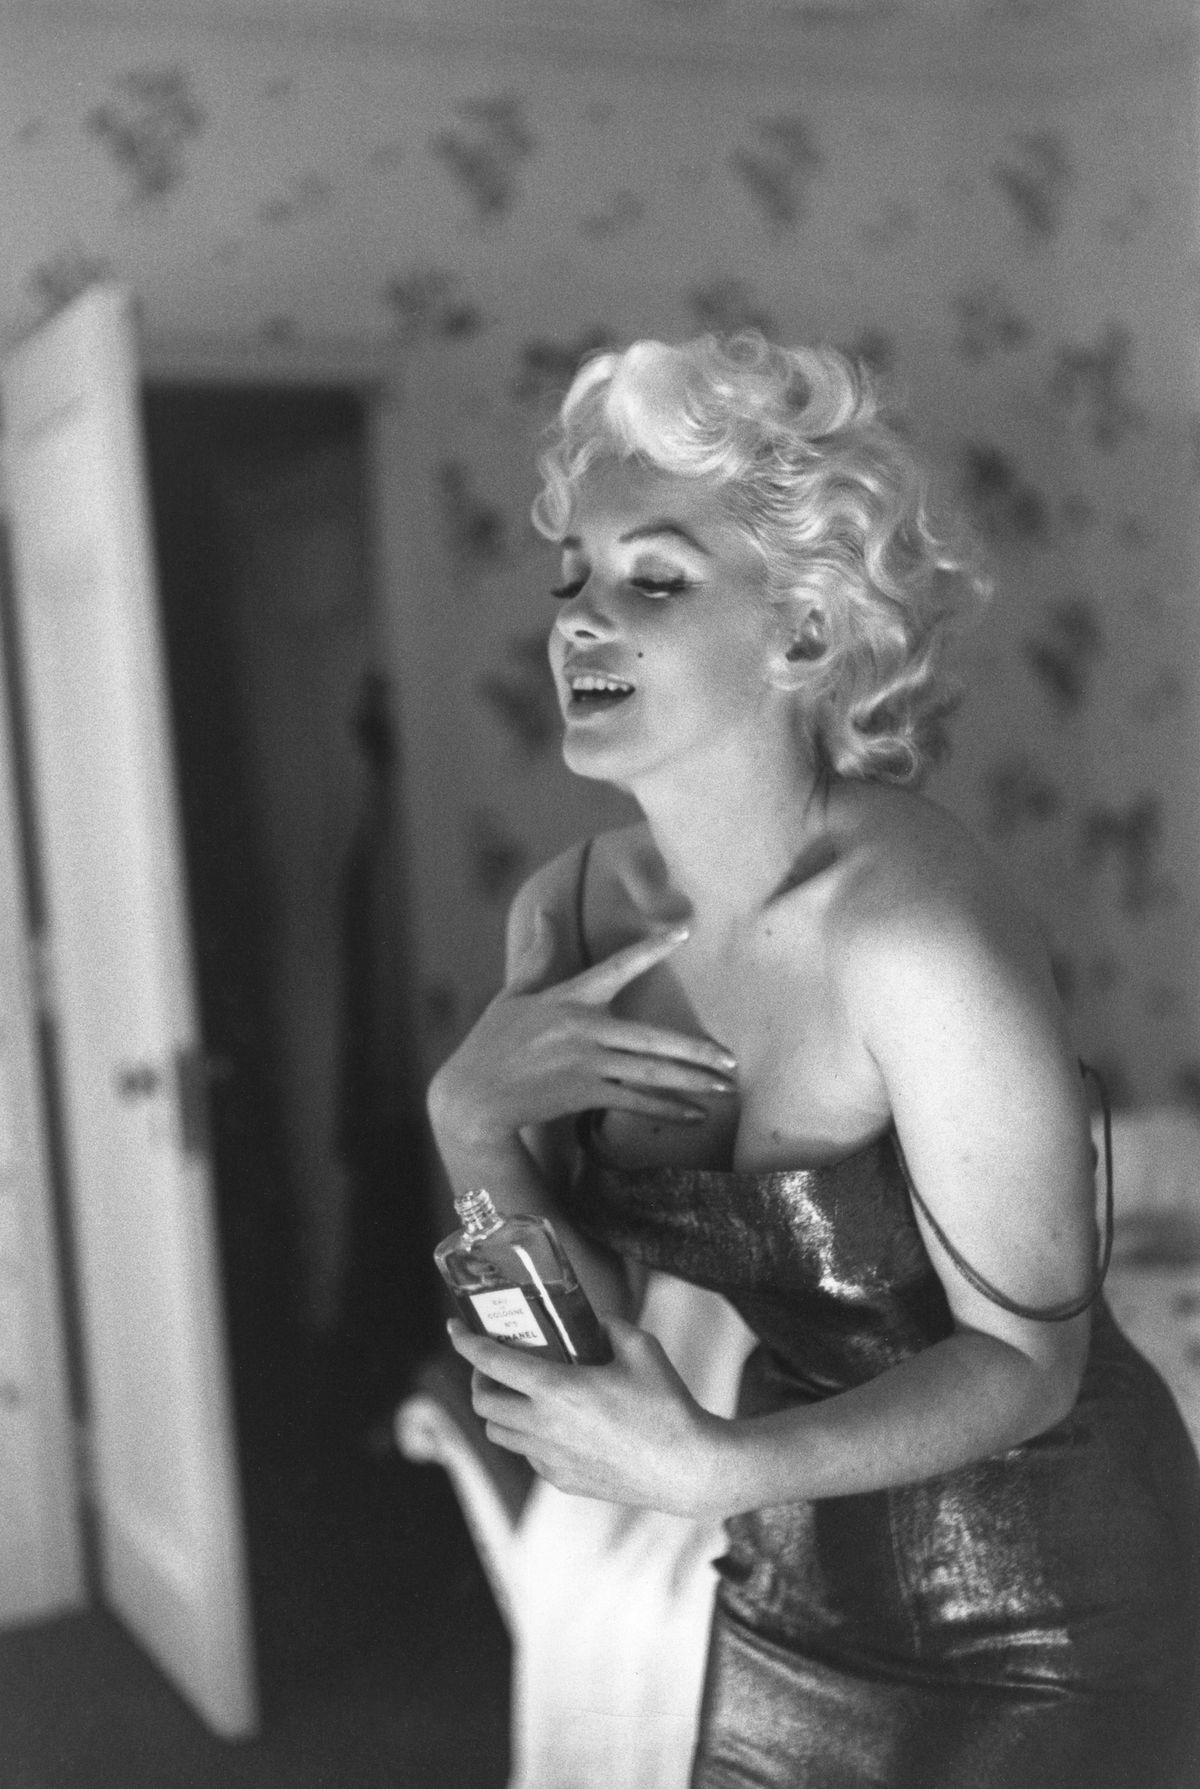 Ed Feingersh, Marilyn Monroe applying Chanel N° 5 (détail), 1955, photographie.
© Ed Feingersh/Michael Ochs Archive/Getty Images.